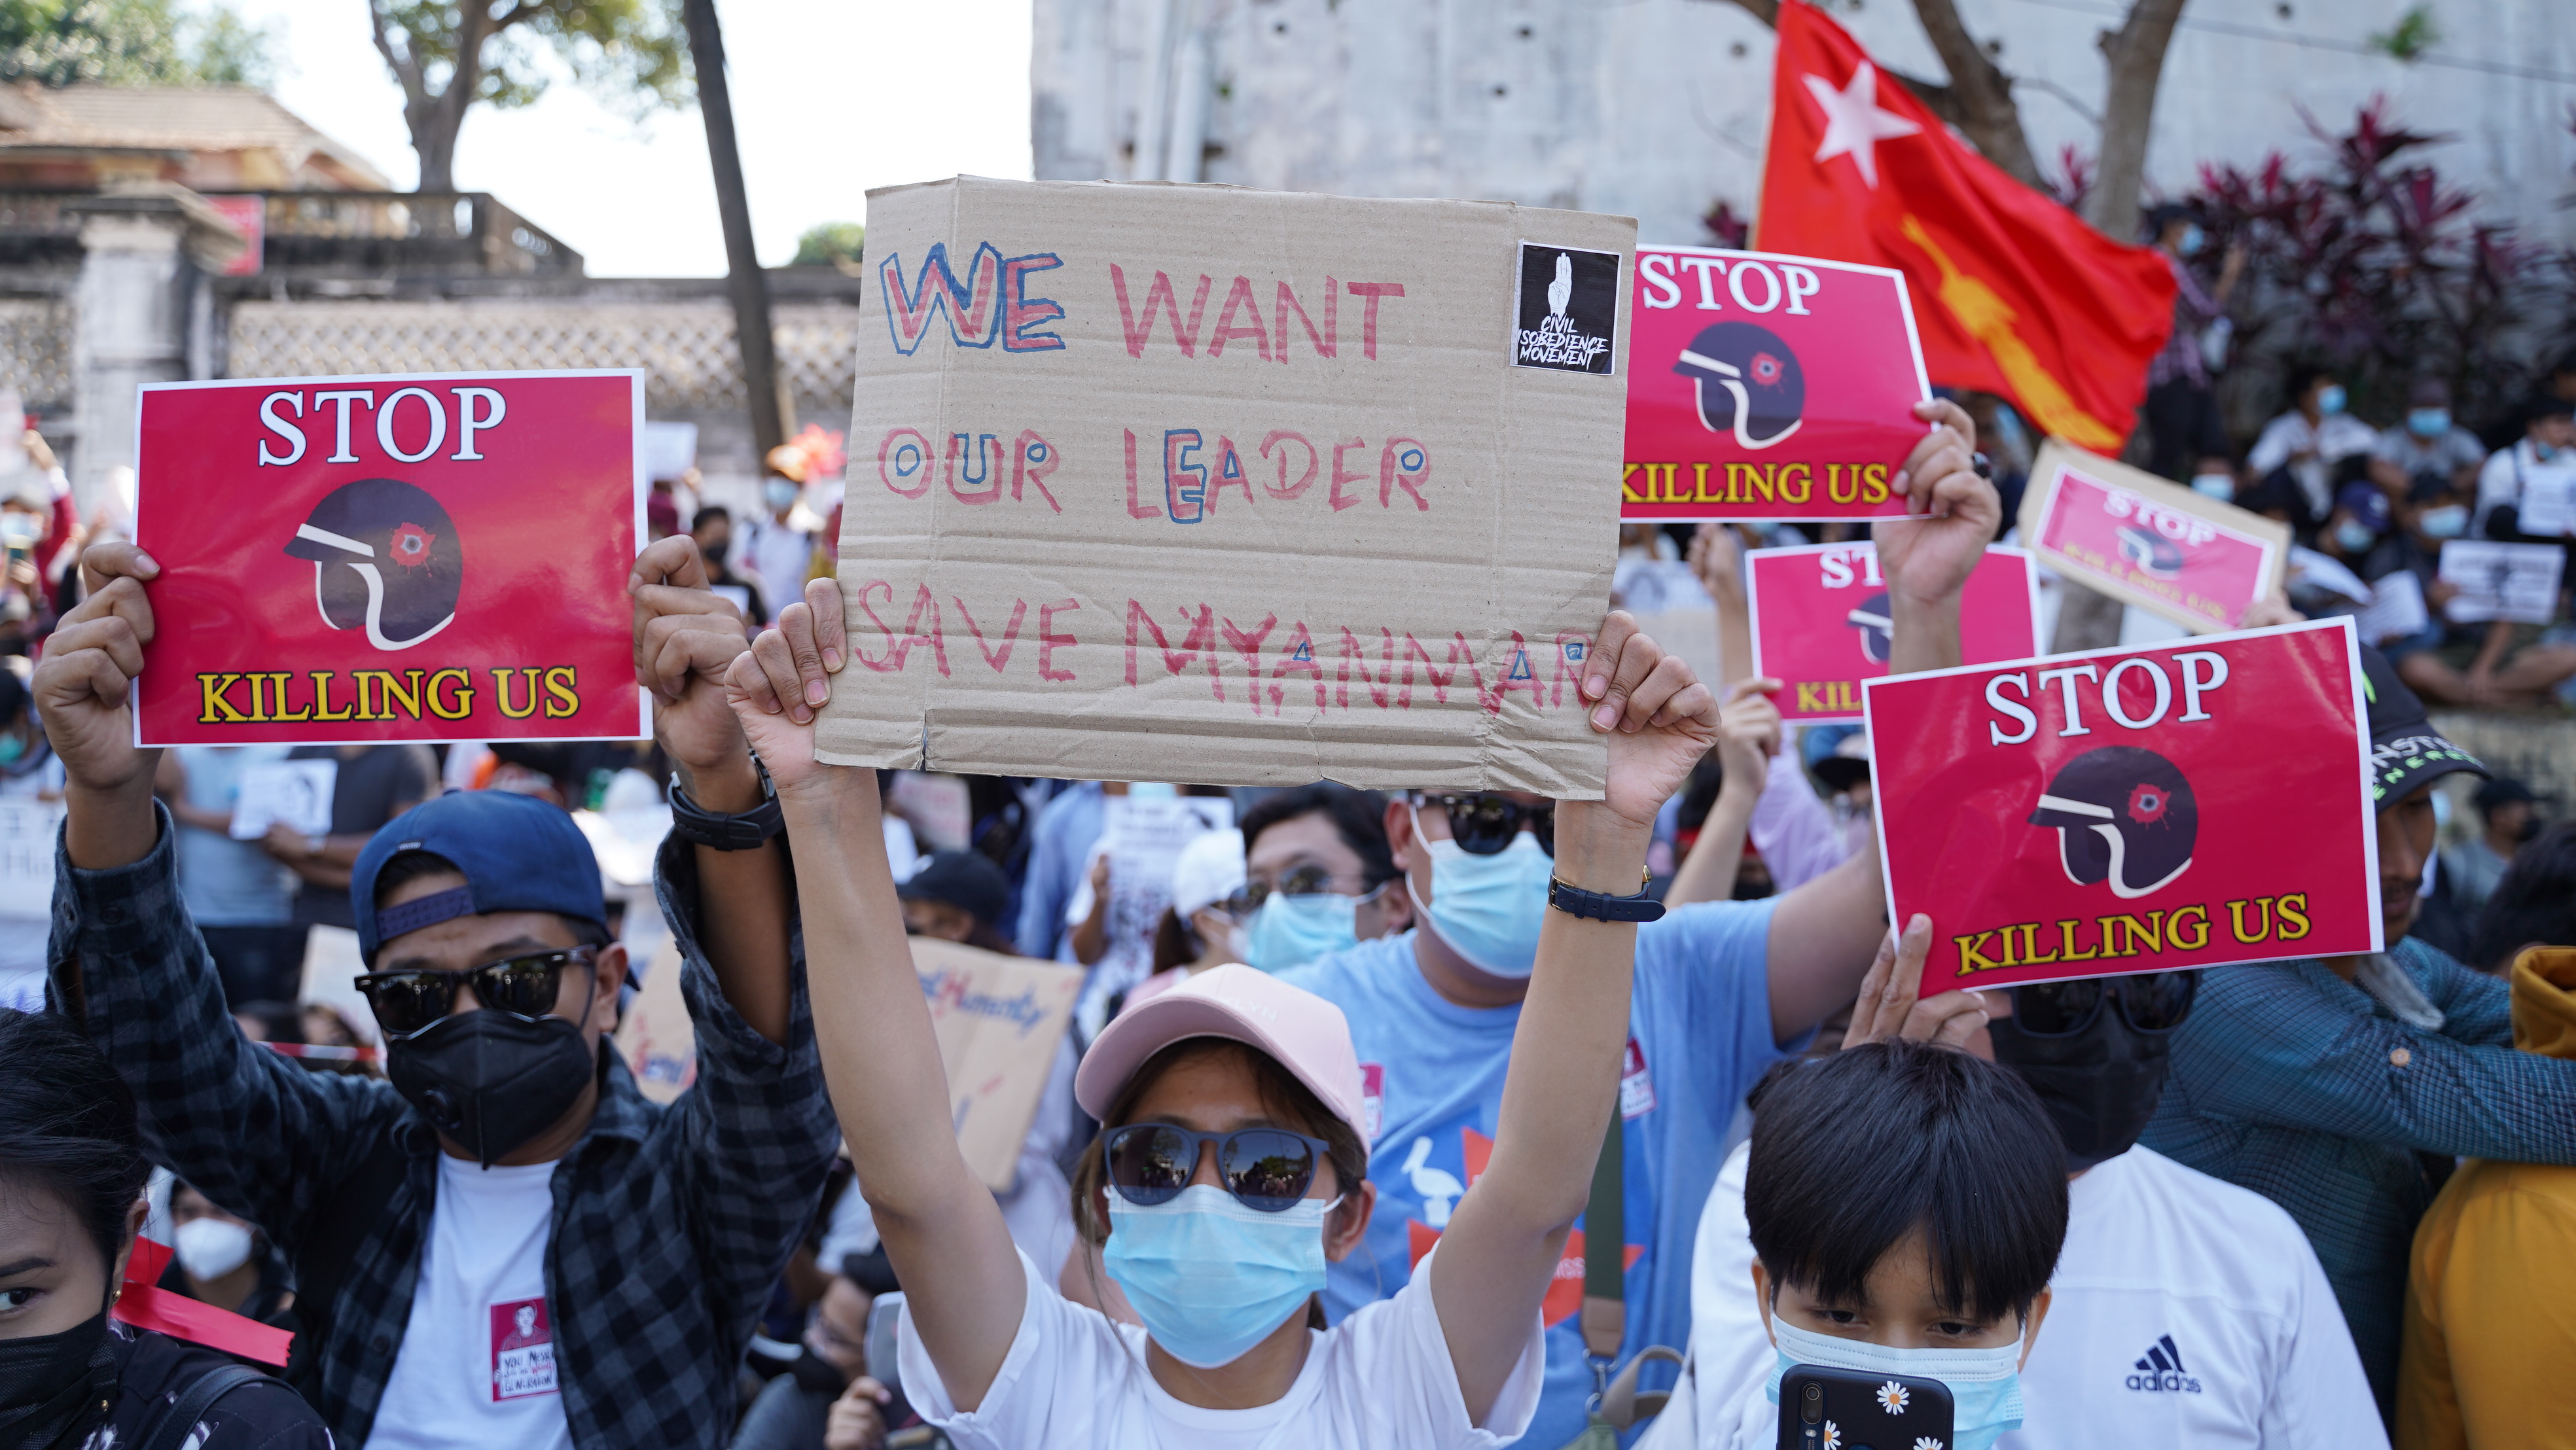 미얀마 양곤에서 사망한 시민들에 대해 목소리를 내는 시위자